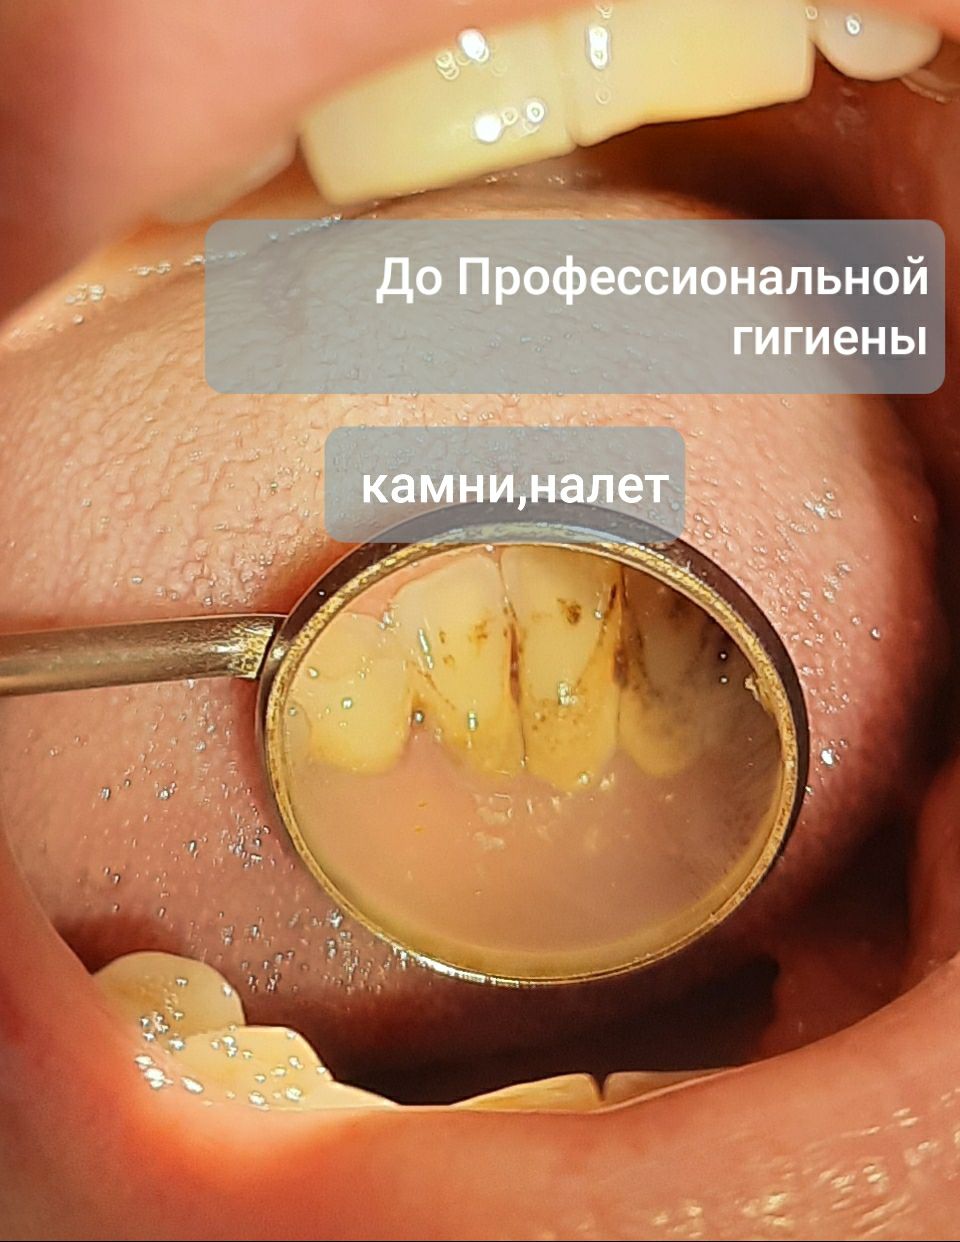 Гигиена полости рта. Фото до процедуры